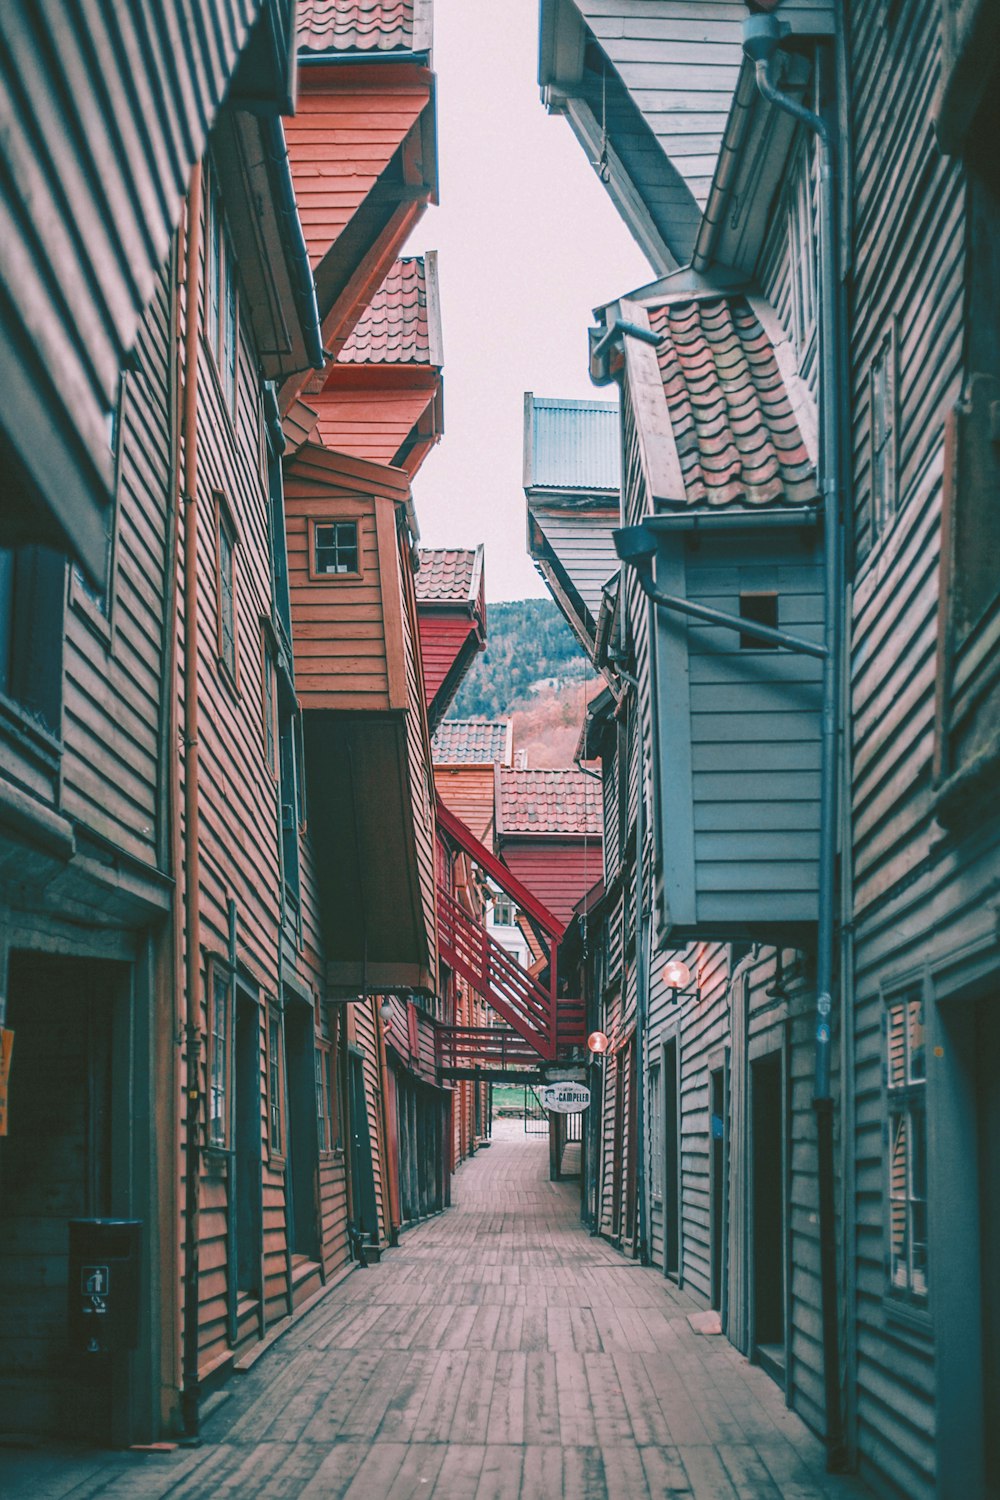 Captura de pantalla de casas de colores variados entre callejones vacíos